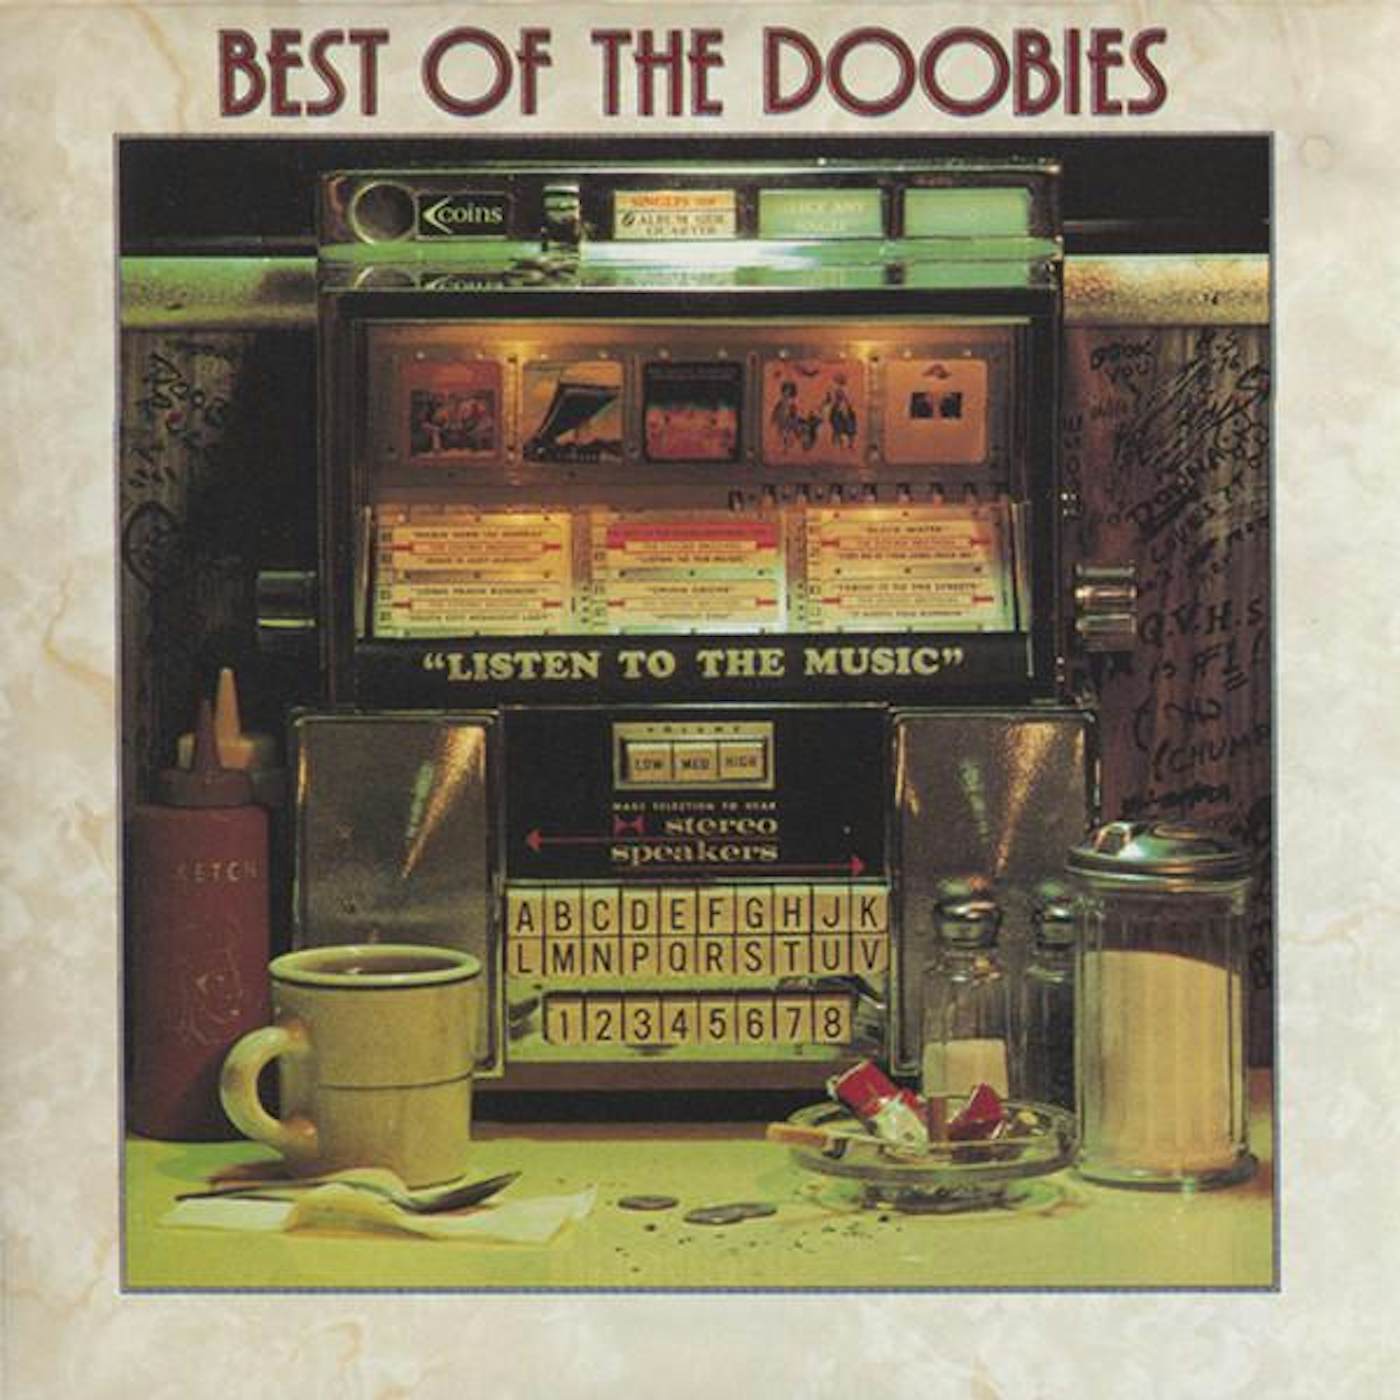 The Doobie Brothers BEST OF THE DOOBIES CD